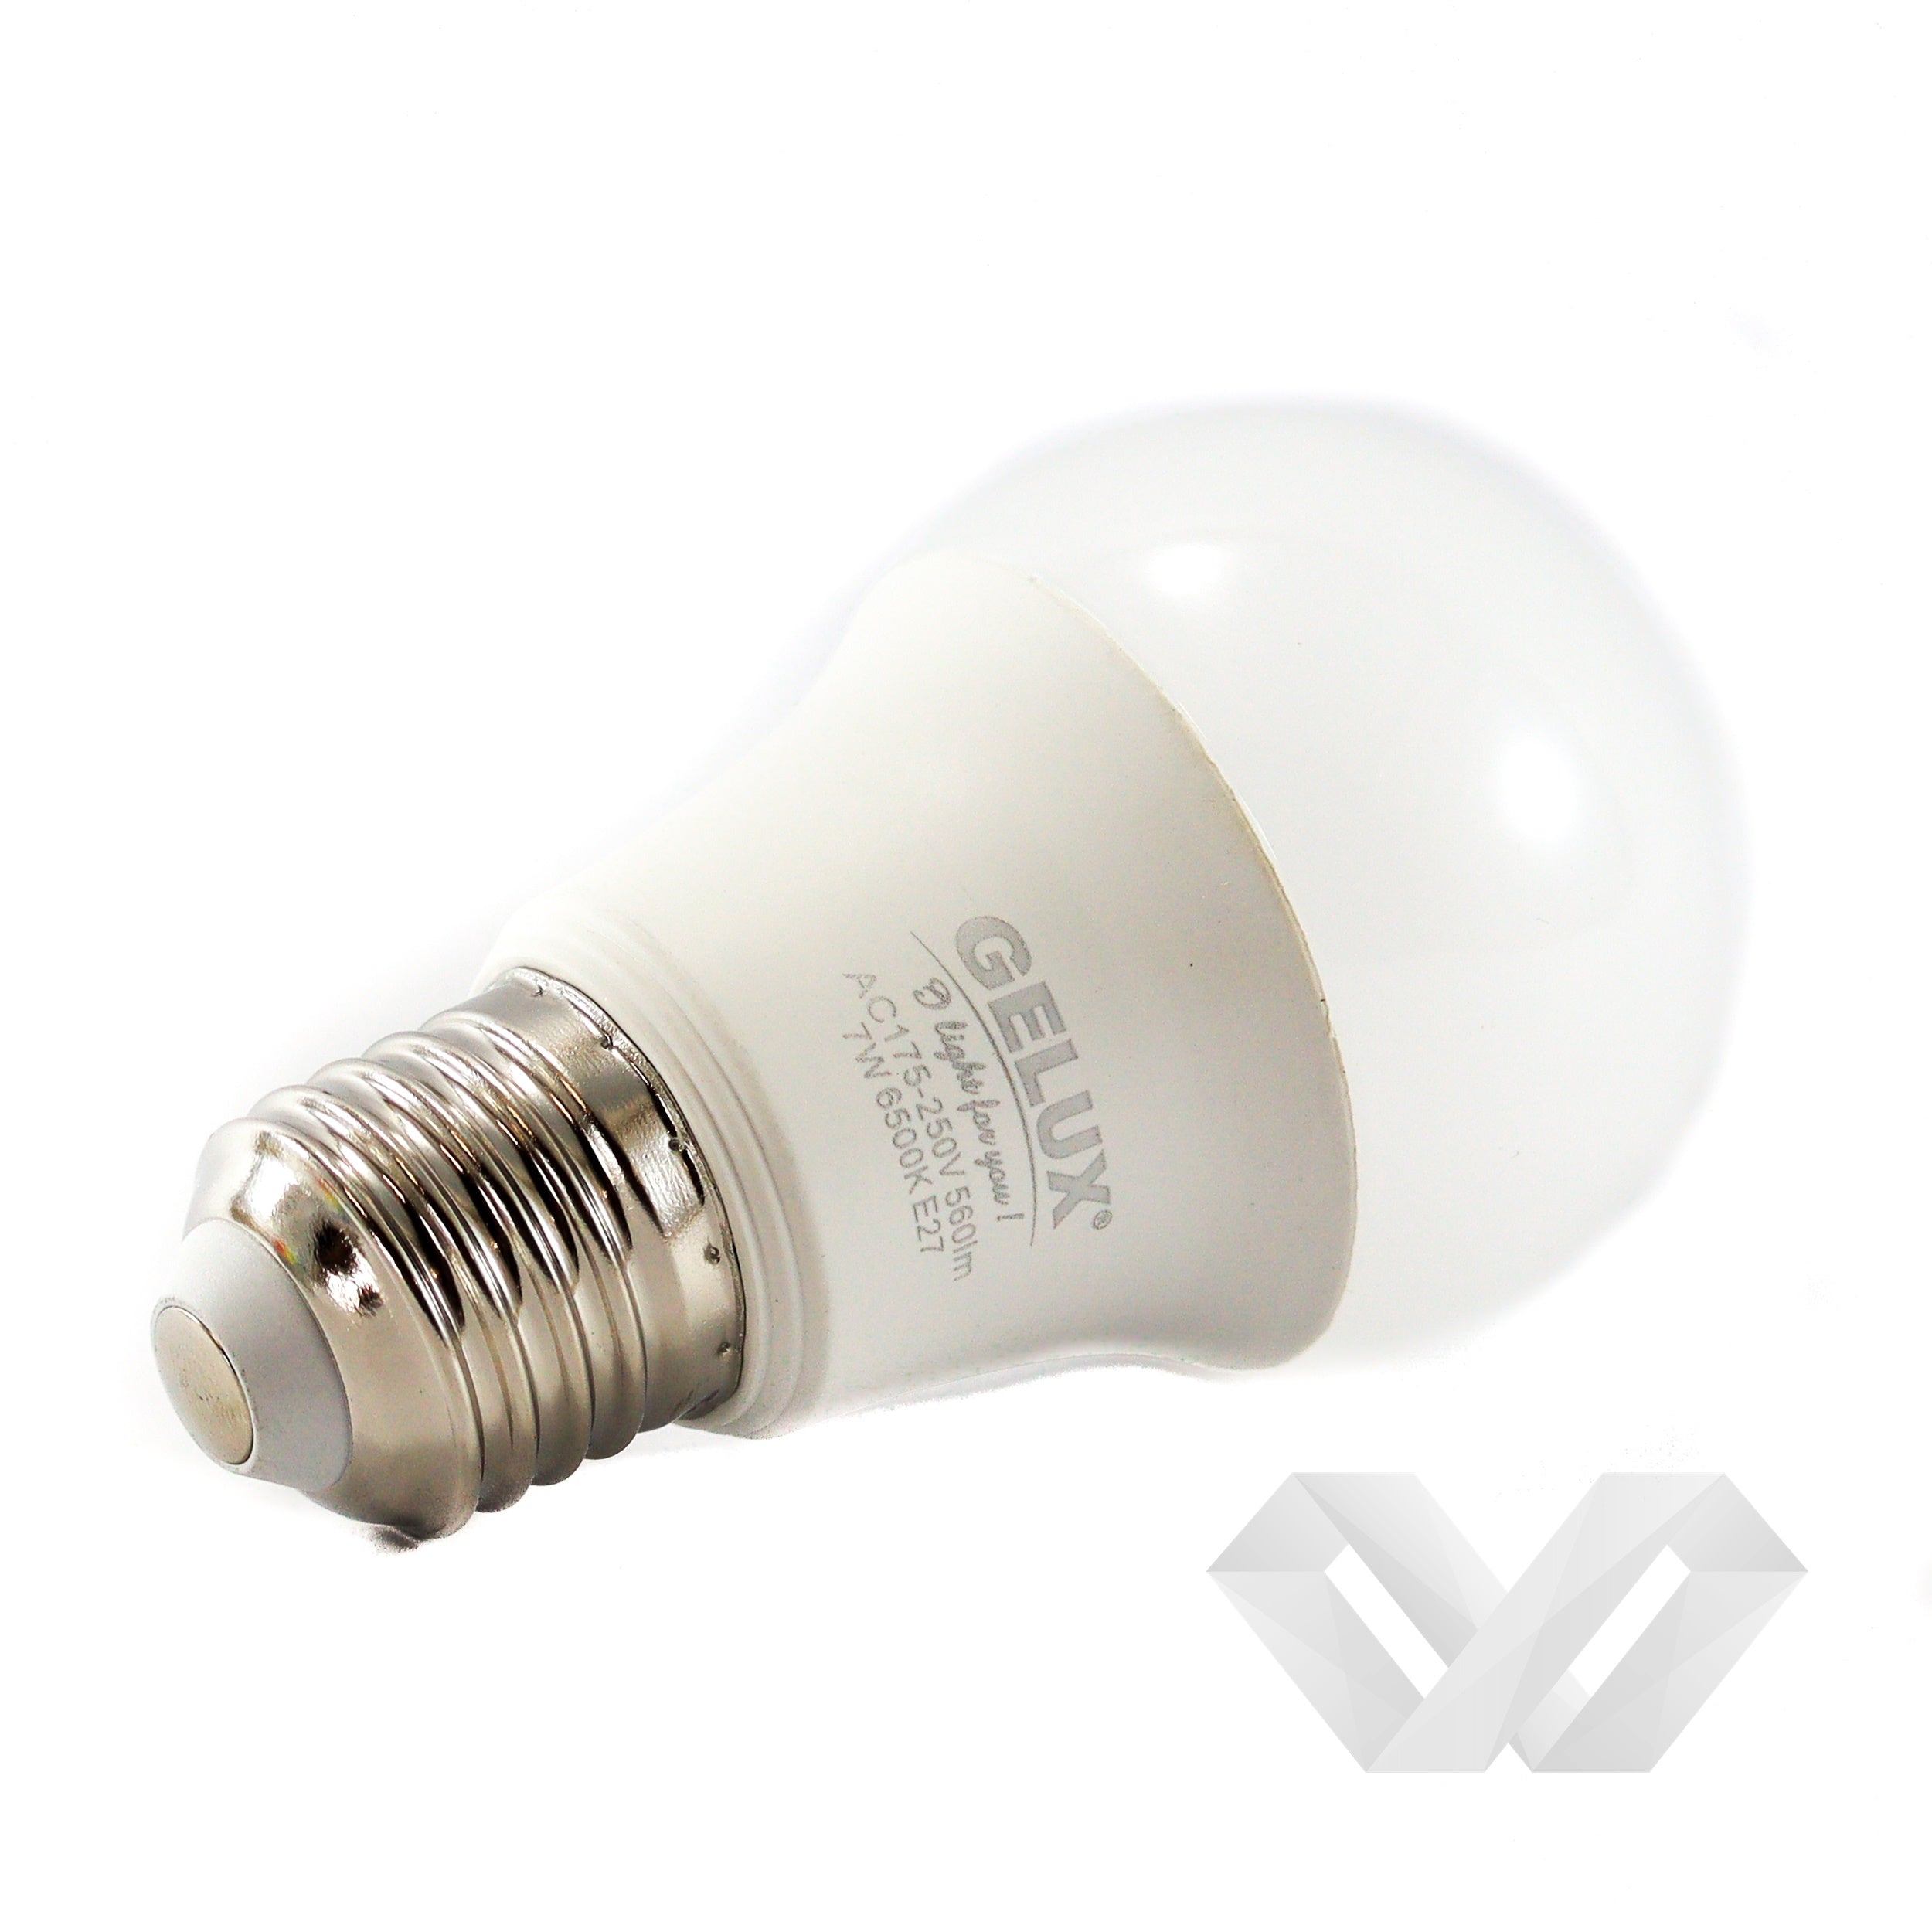 Bec LED 12W E27 Standard ECOLED, echivalent 96W lumină caldă, Gelux